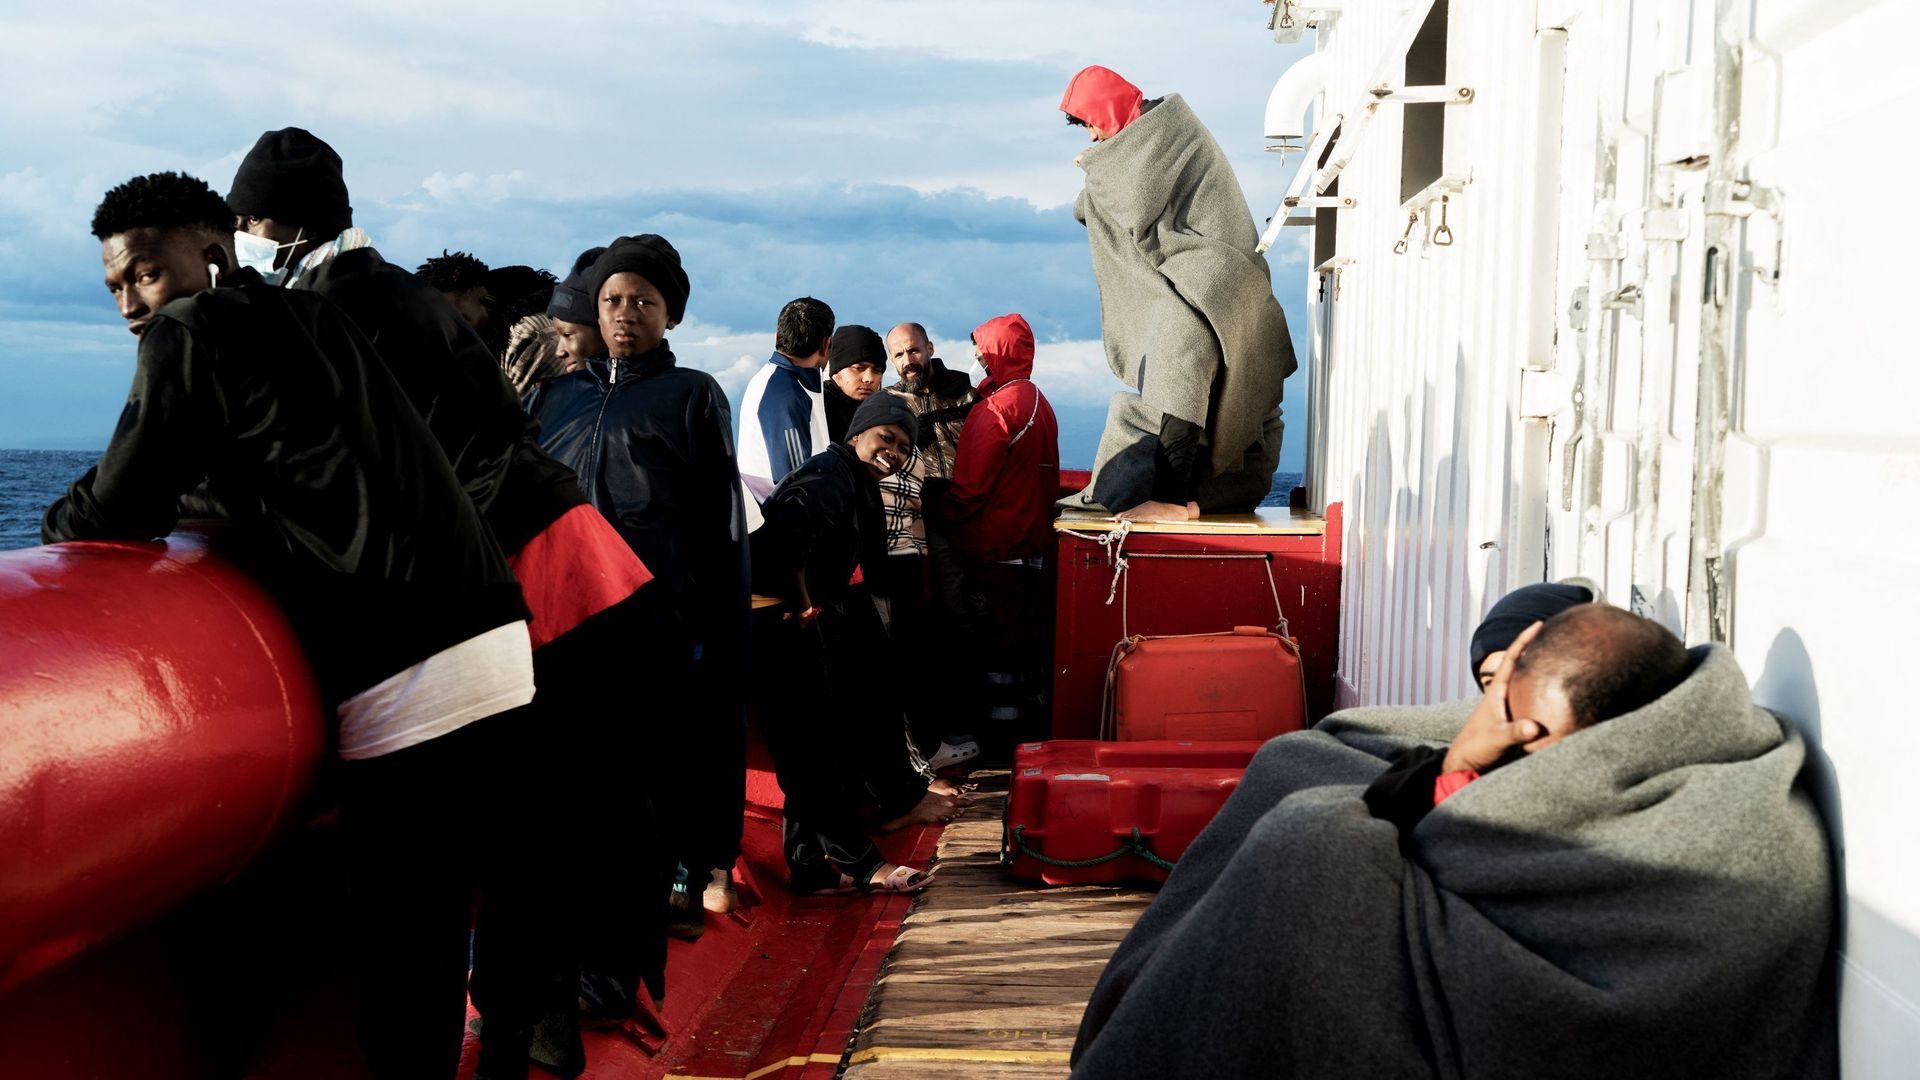 Des migrants regardent et attendent sur le pont du navire de sauvetage "Ocean Viking" de l’organisation maritime-humanitaire européenne "SOS Méditerranée" dans le golfe de Catane en mer Méditerranée dans les eaux internationales, le 6 novembre 2022.